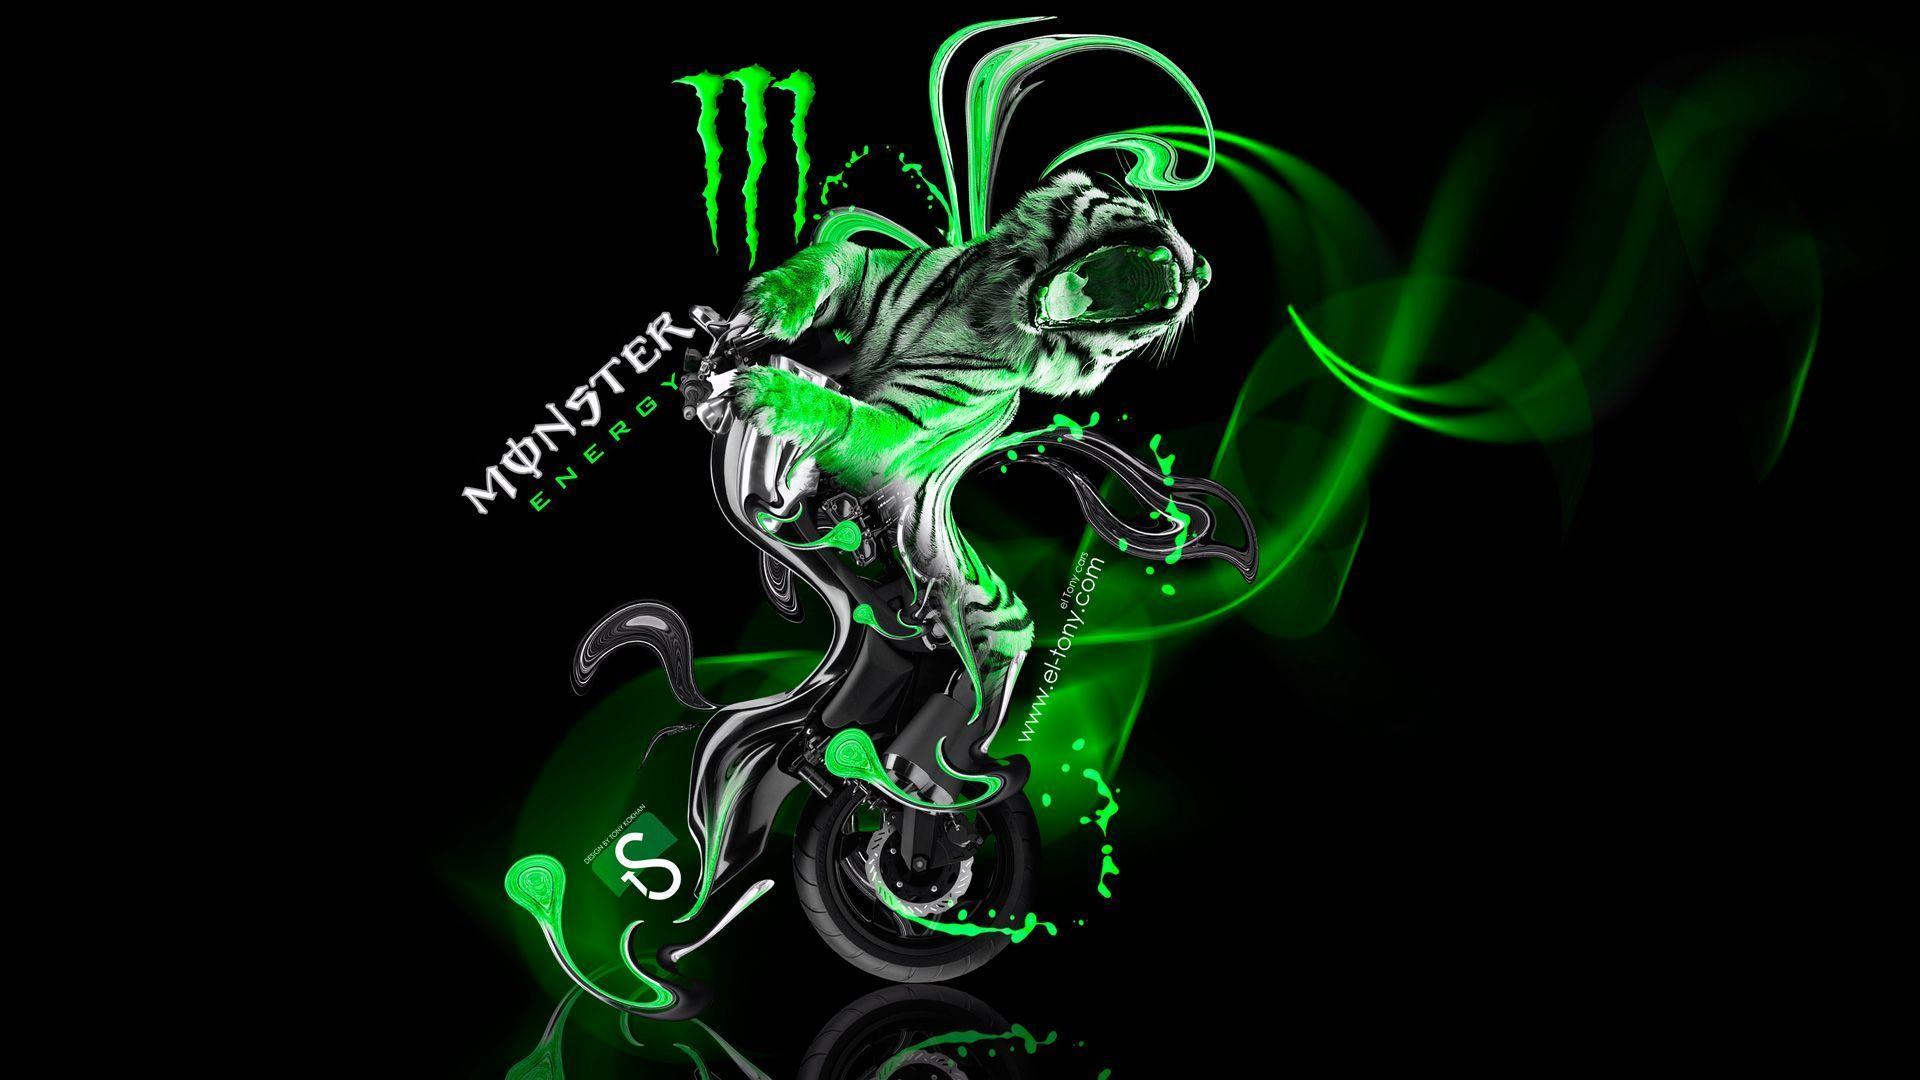 Monster Energy Fantasy Green Tiger Bike Wallpa Wallpaper